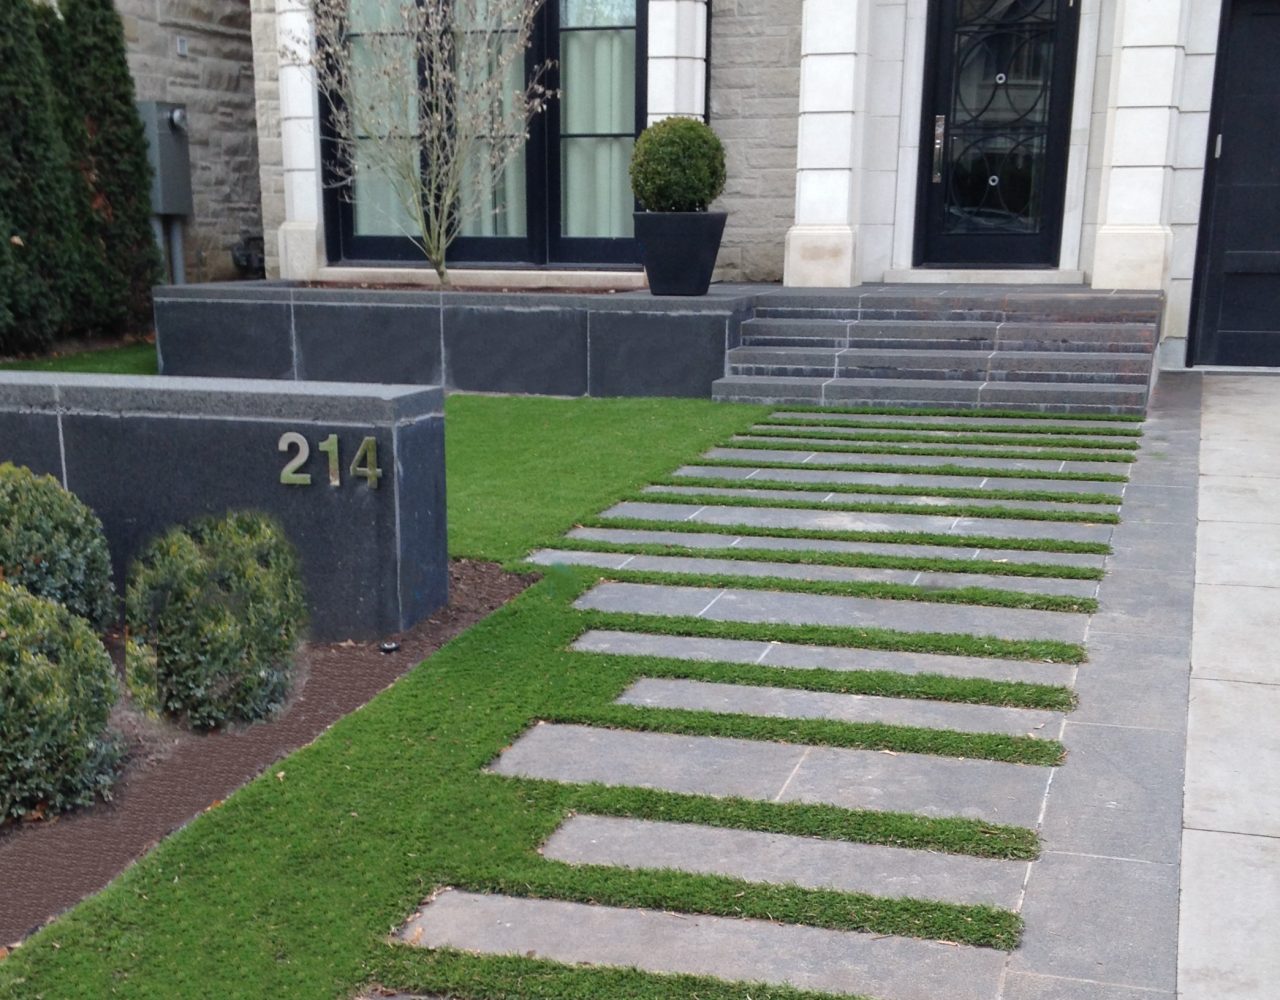 Nice walkway to front door with artificial grass between stone pavers